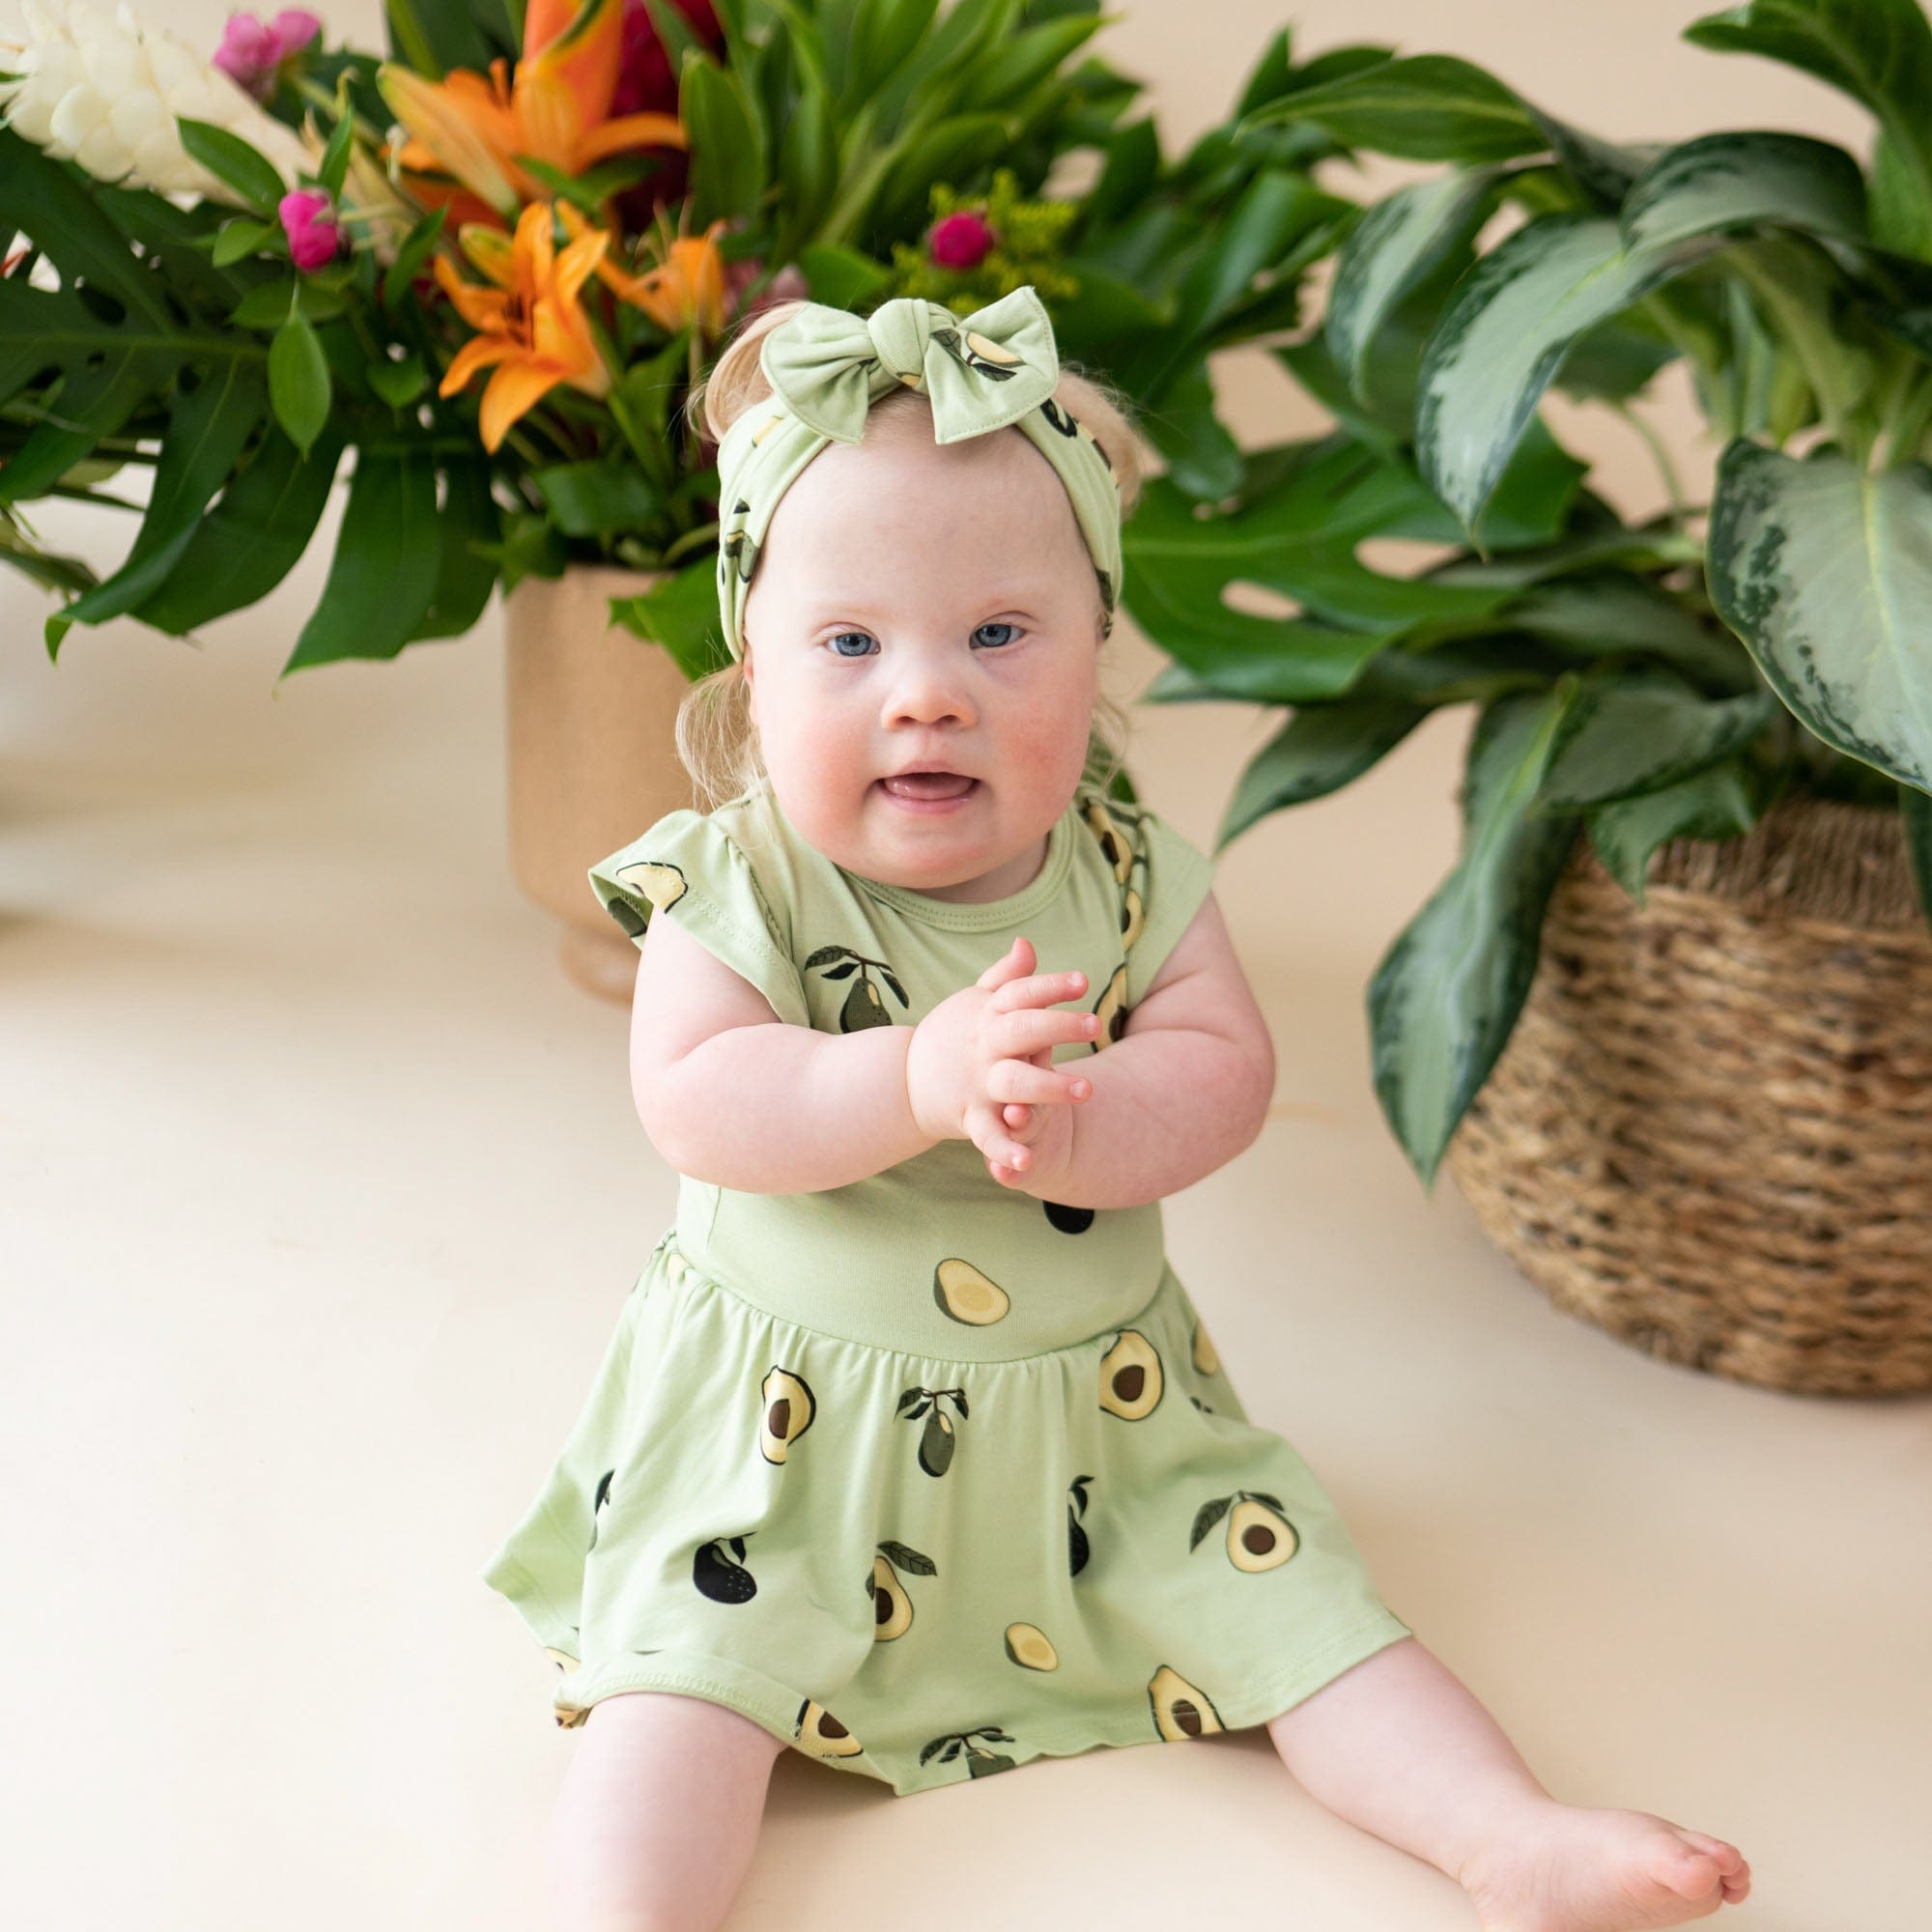 Kyte Baby Bodysuit Dress Twirl Bodysuit Dress in Avocado